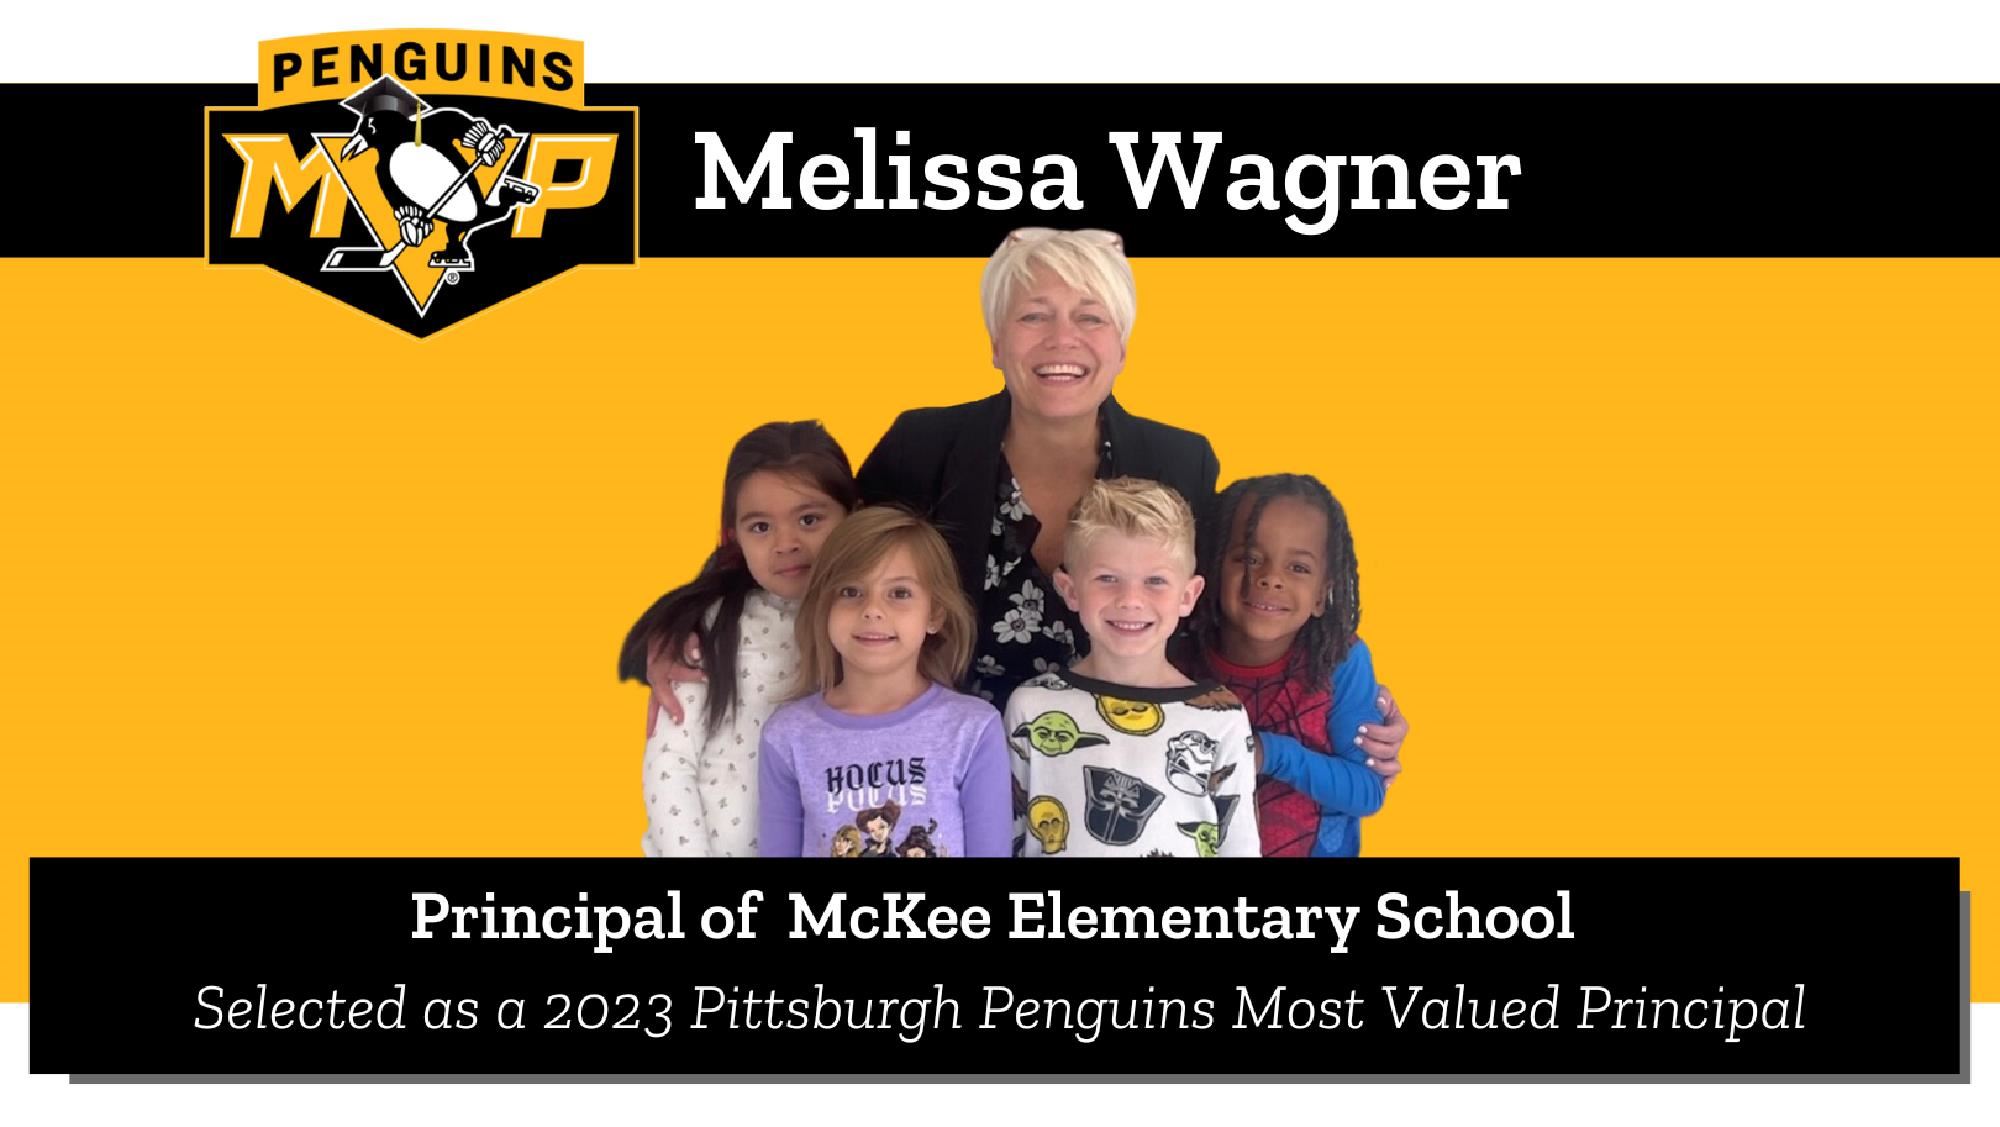 Pens MVP Melissa Wagner, Principal of McKee Elementary School